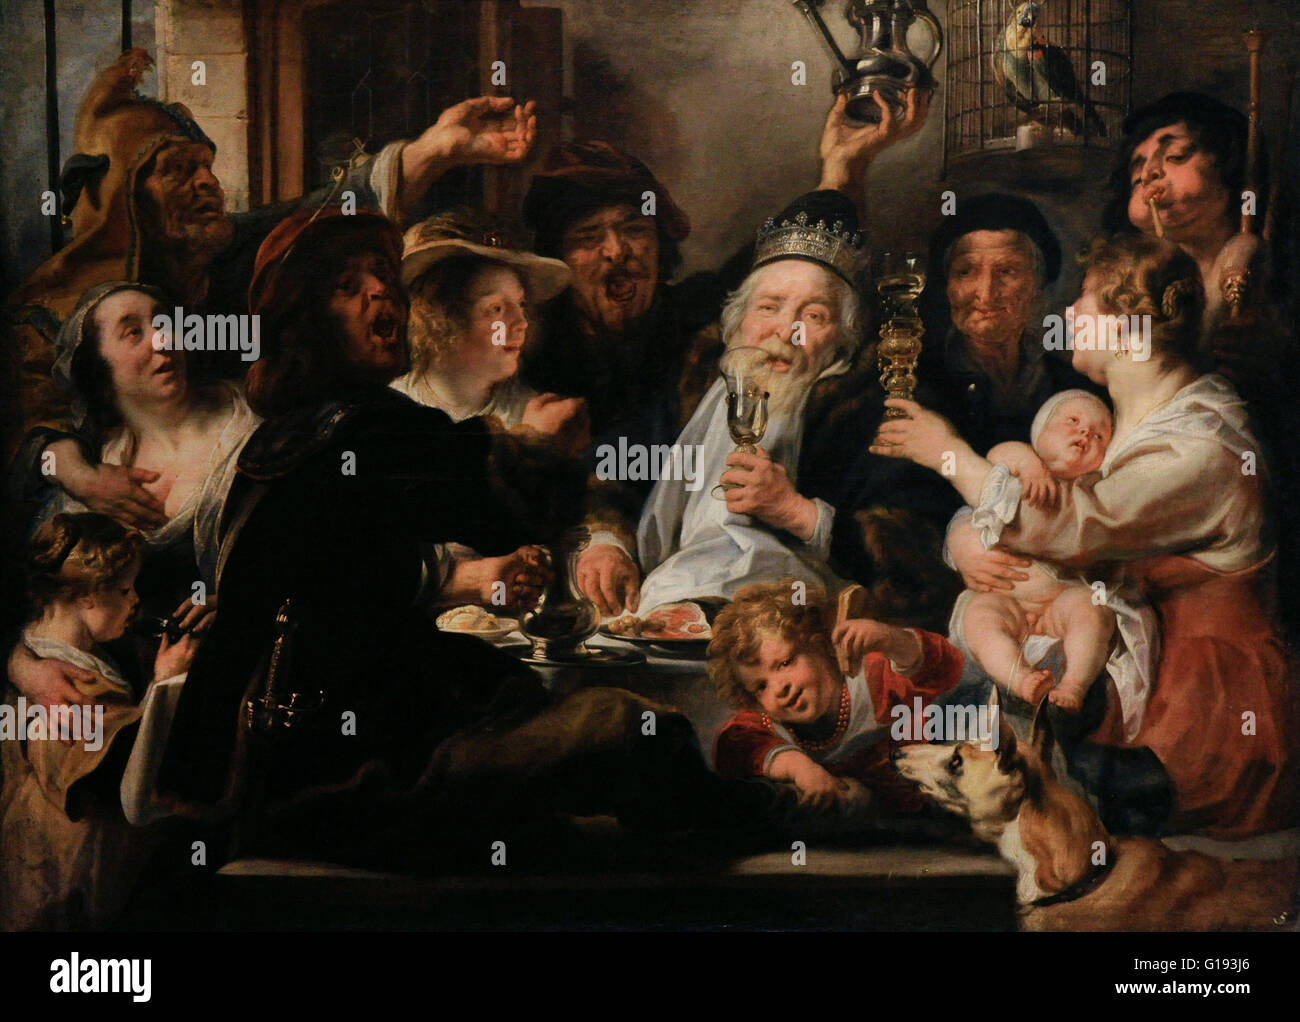 Jacob Jordaens (1593-1678). Flämischer Maler. Die Bean-König, 1638. Öl auf Leinwand. Die Eremitage. Sankt Petersburg. Russland. Stockfoto